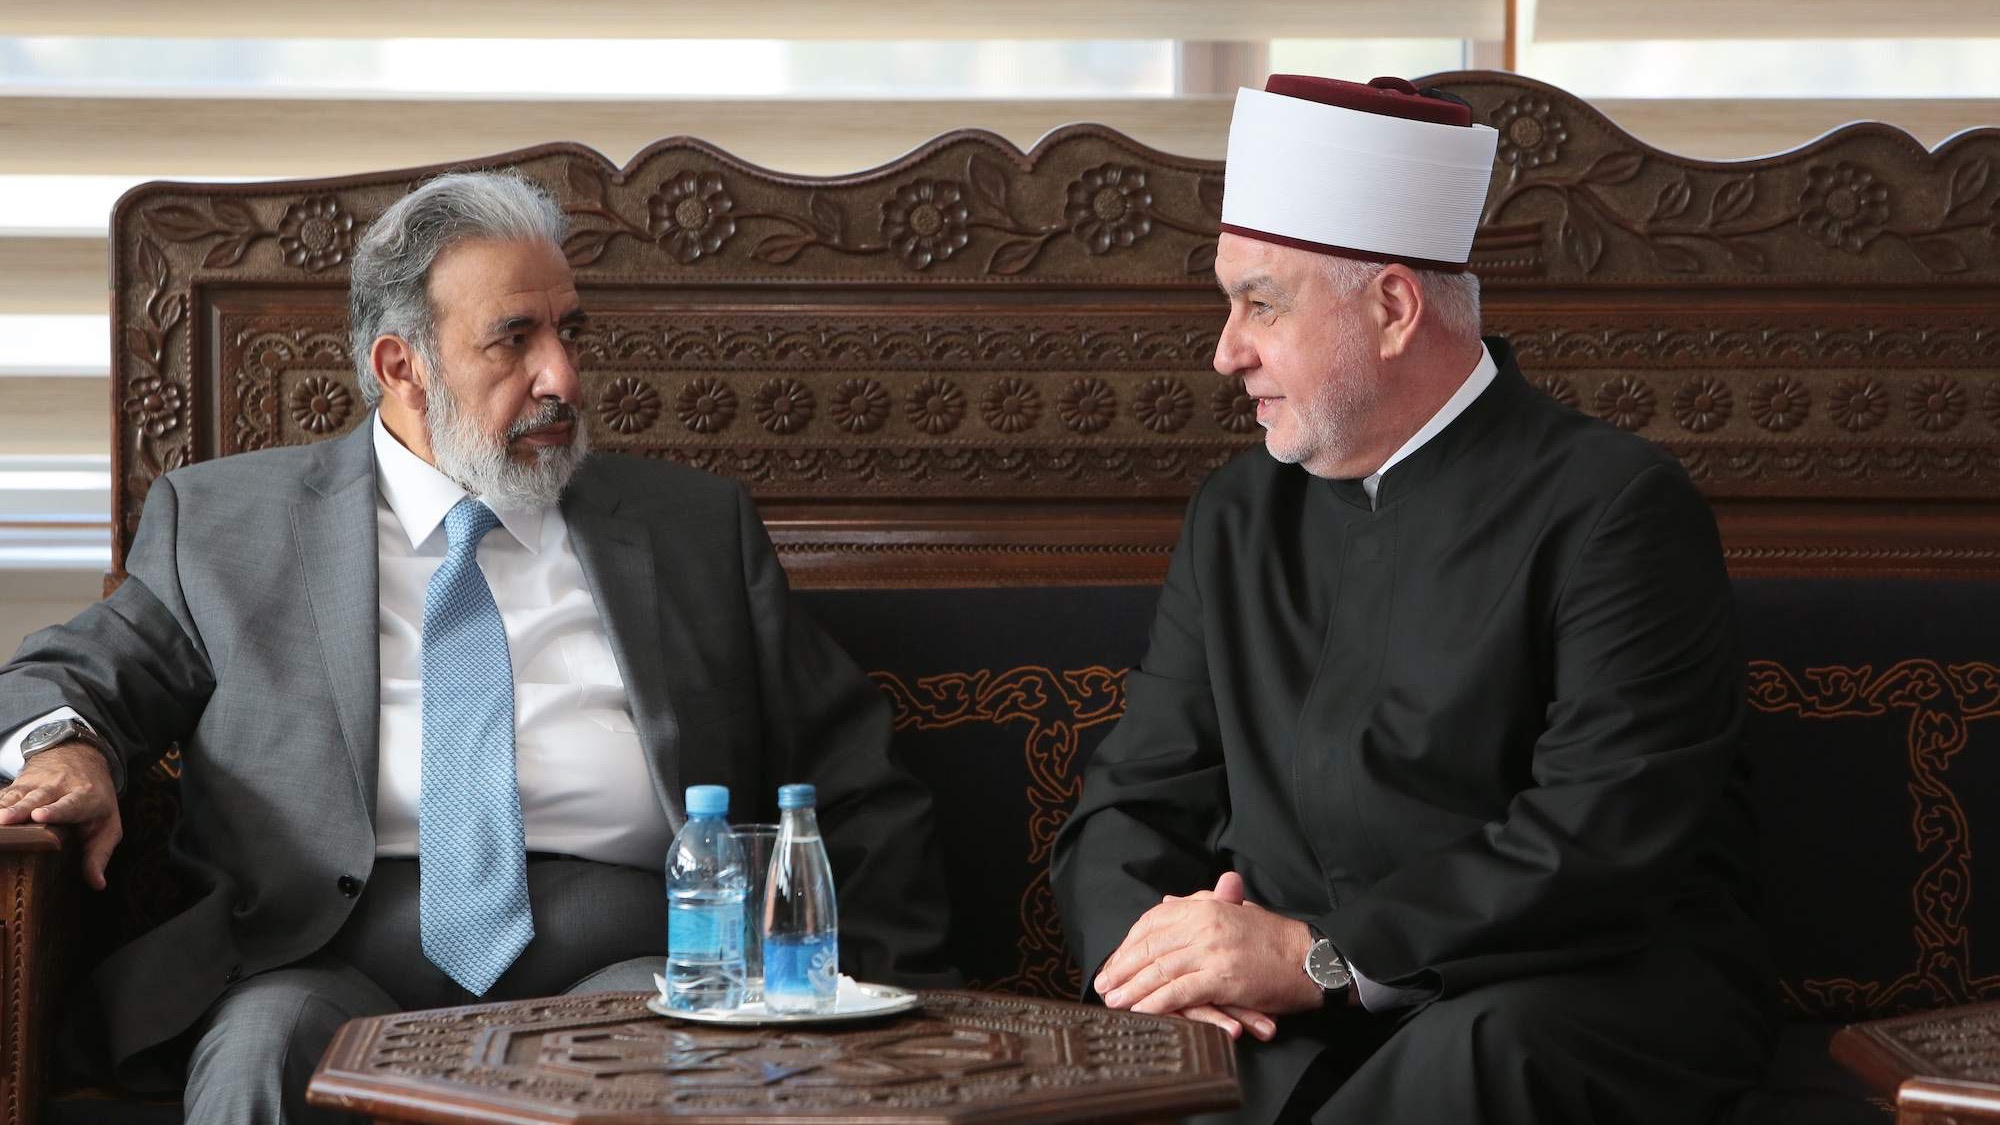 Ministar vakufa i islamskih pitanja Države Katar posjetio reisul-ulemu Husein-ef. Kavazovića